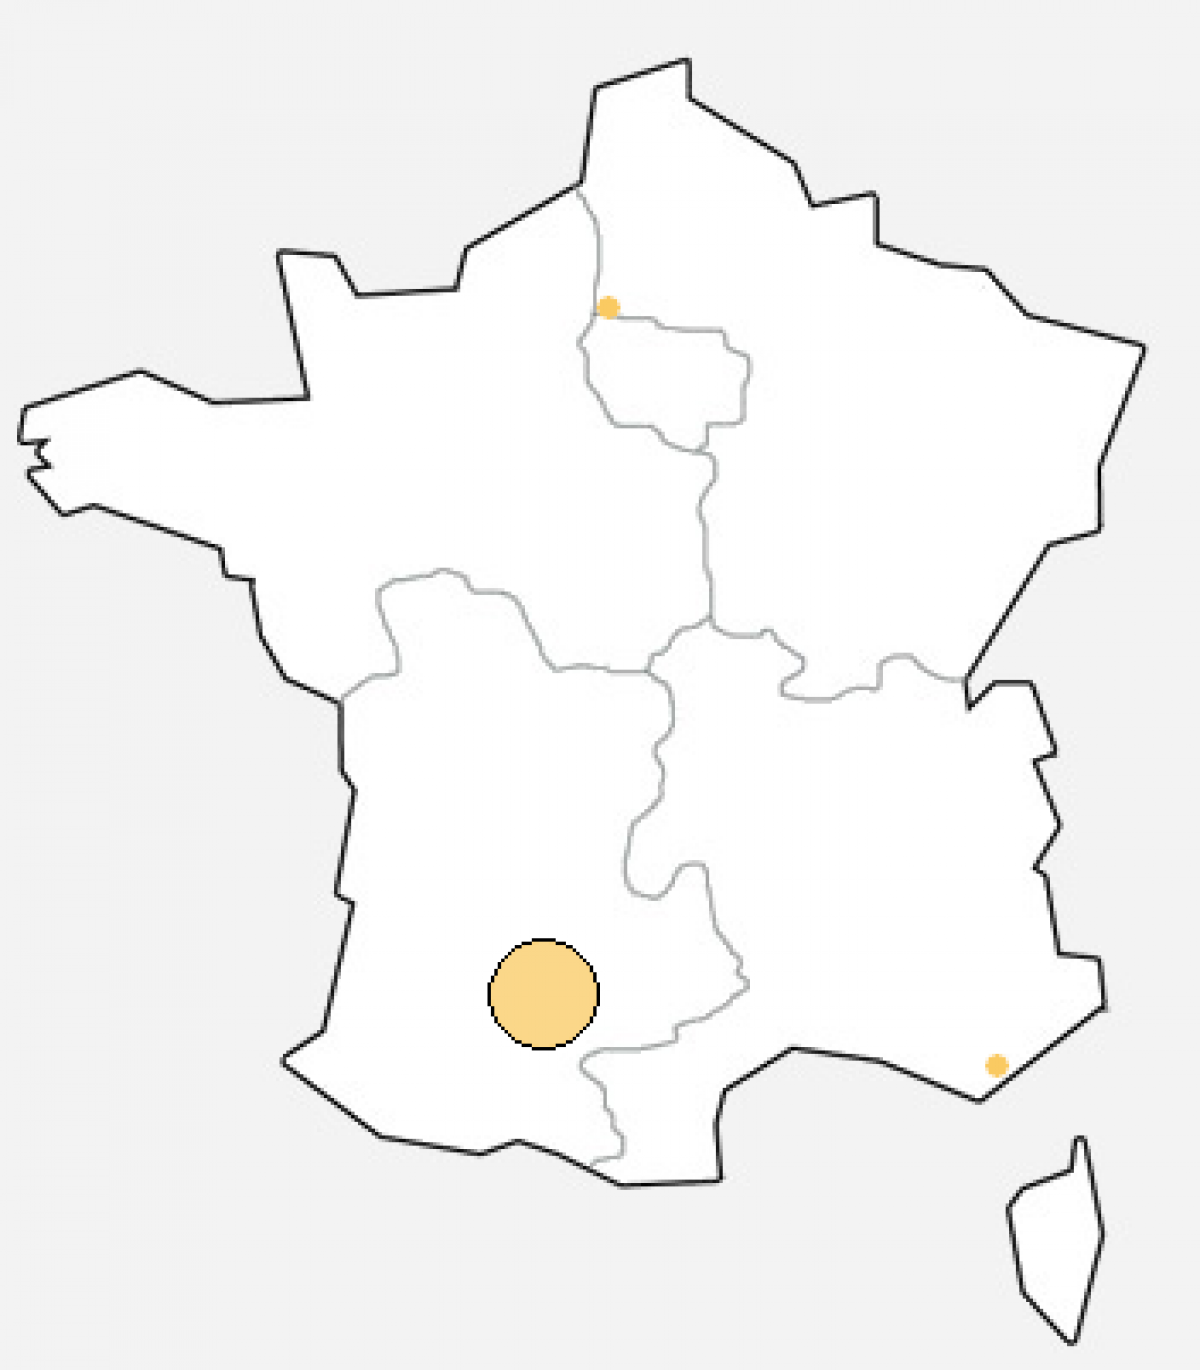 [Résolu] Incident réseau dans le Tarn-et-Garonne : 38 DSLAMs impactés